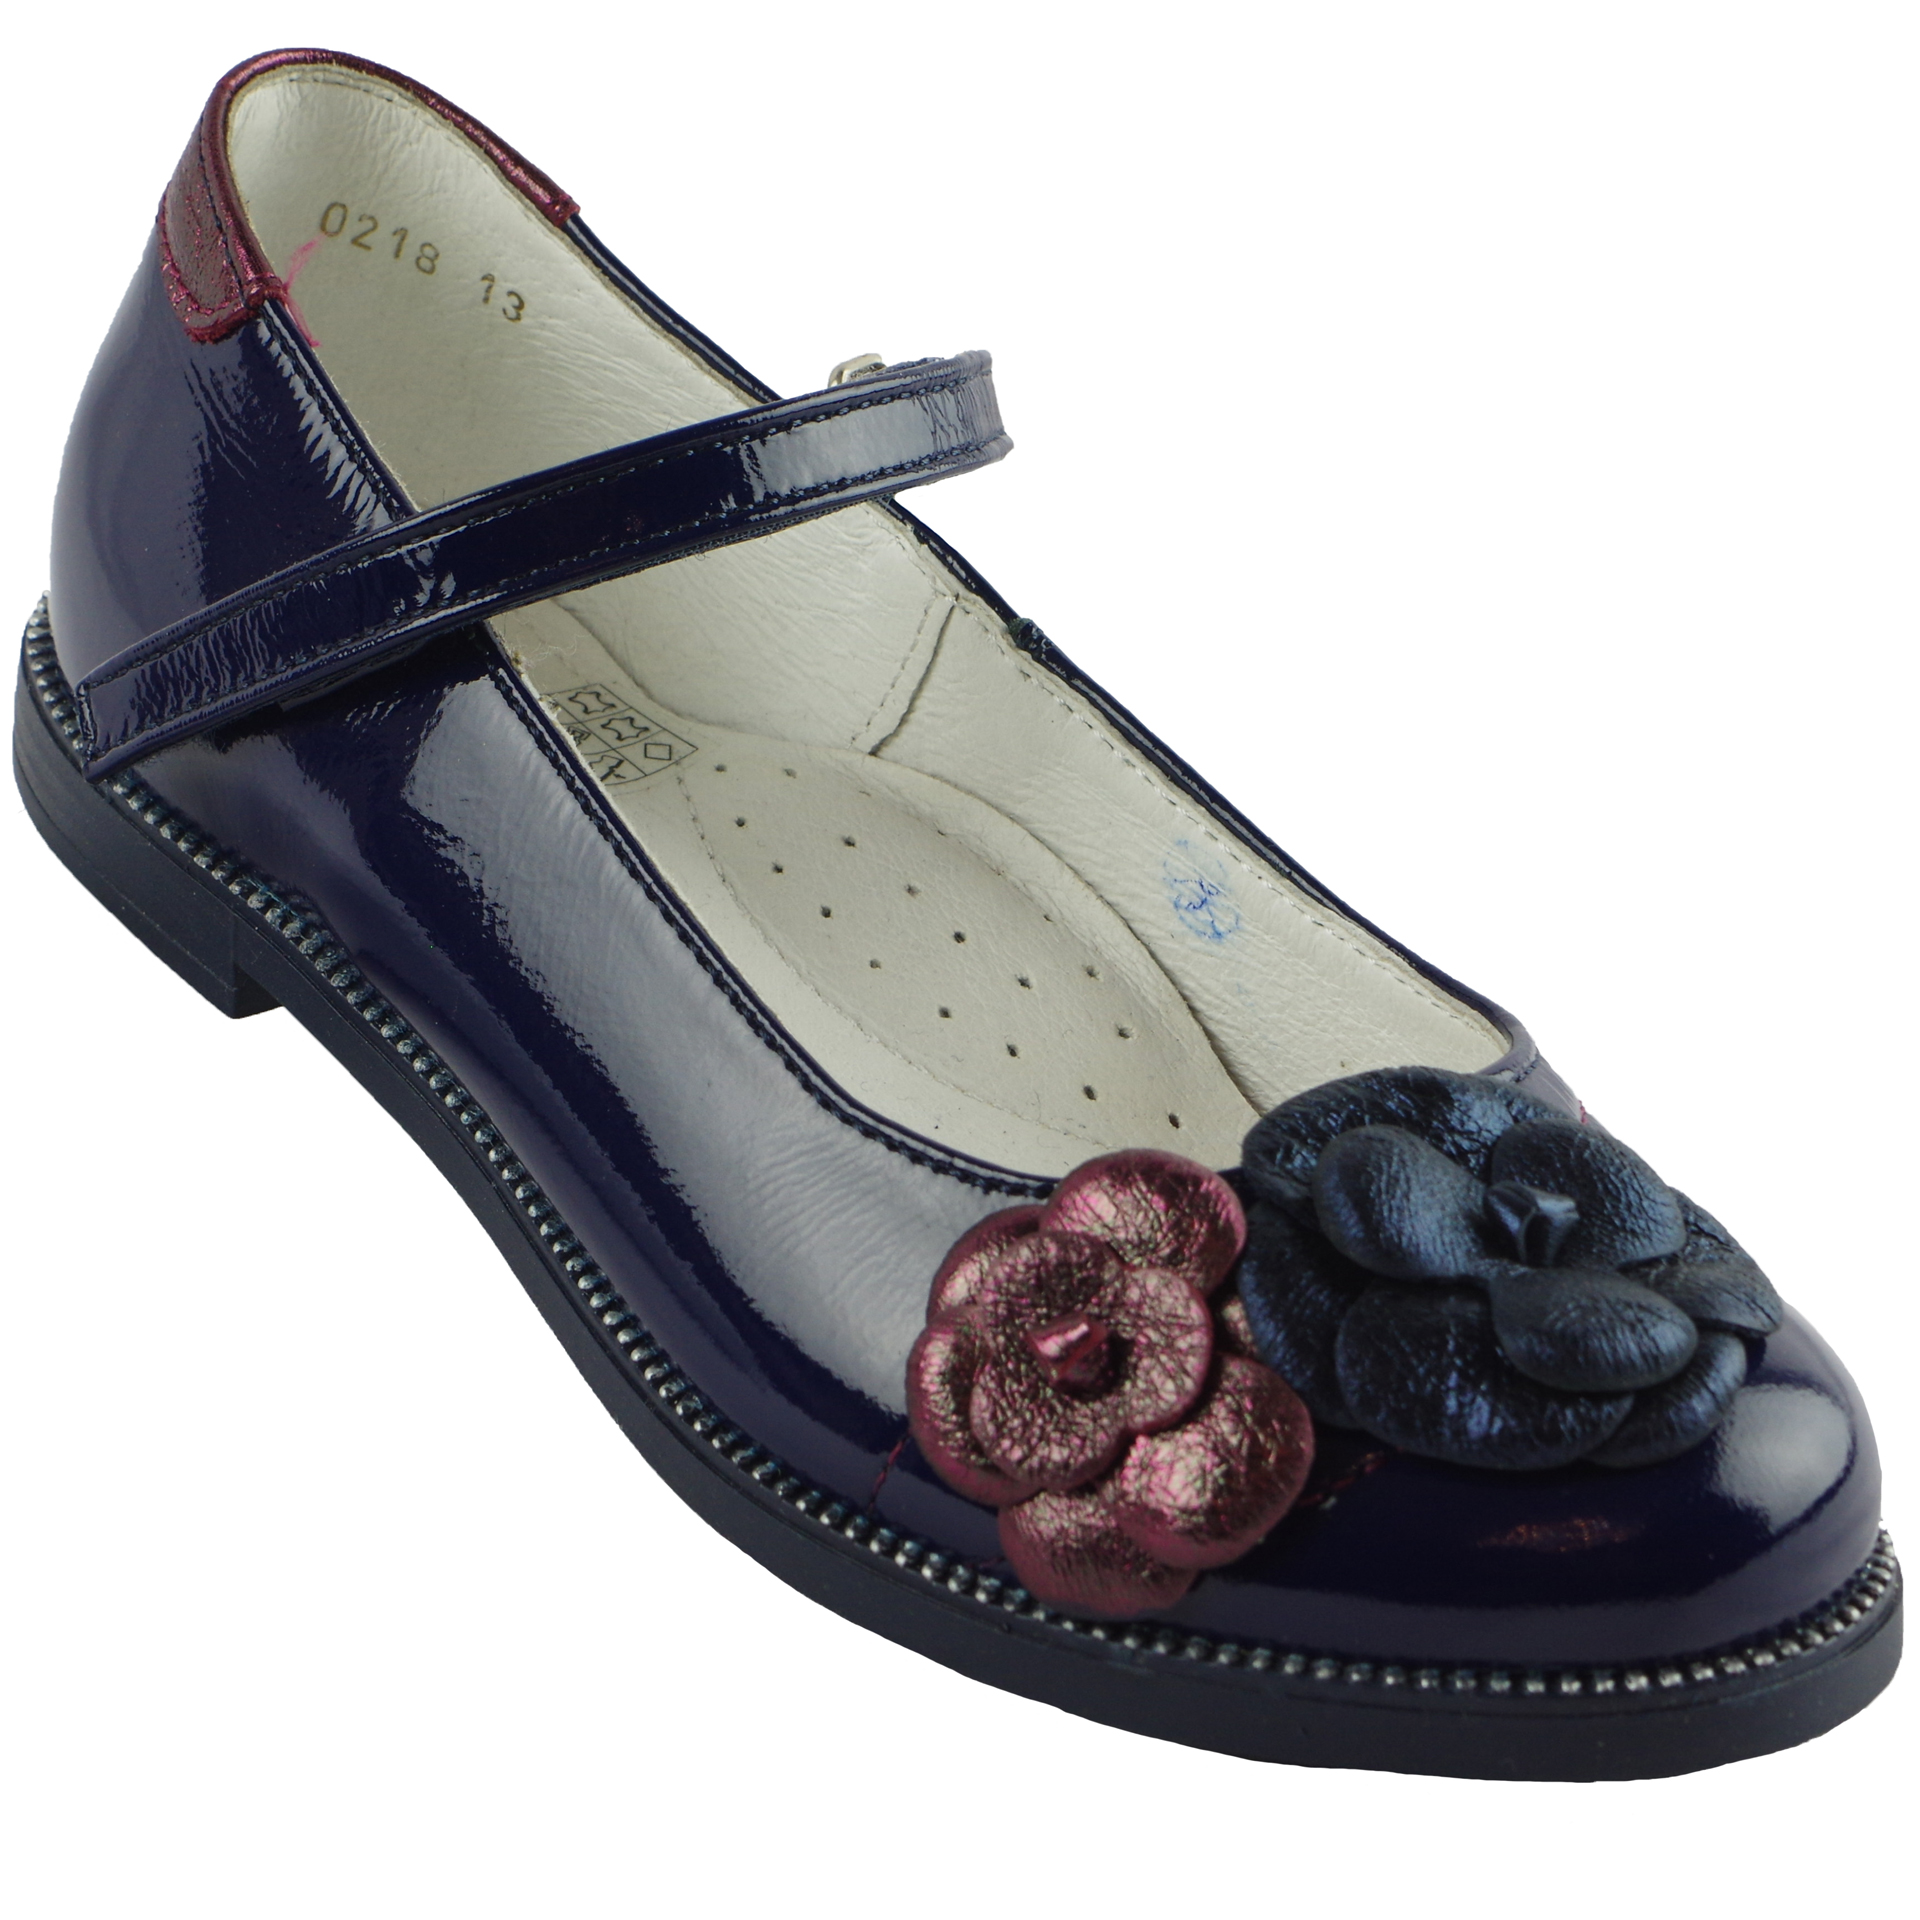 Туфлі шкільні (1444) для дівчинки, матеріал Лакова шкіра, Темно-синій колір, 27-35 розміри – Sole Kids